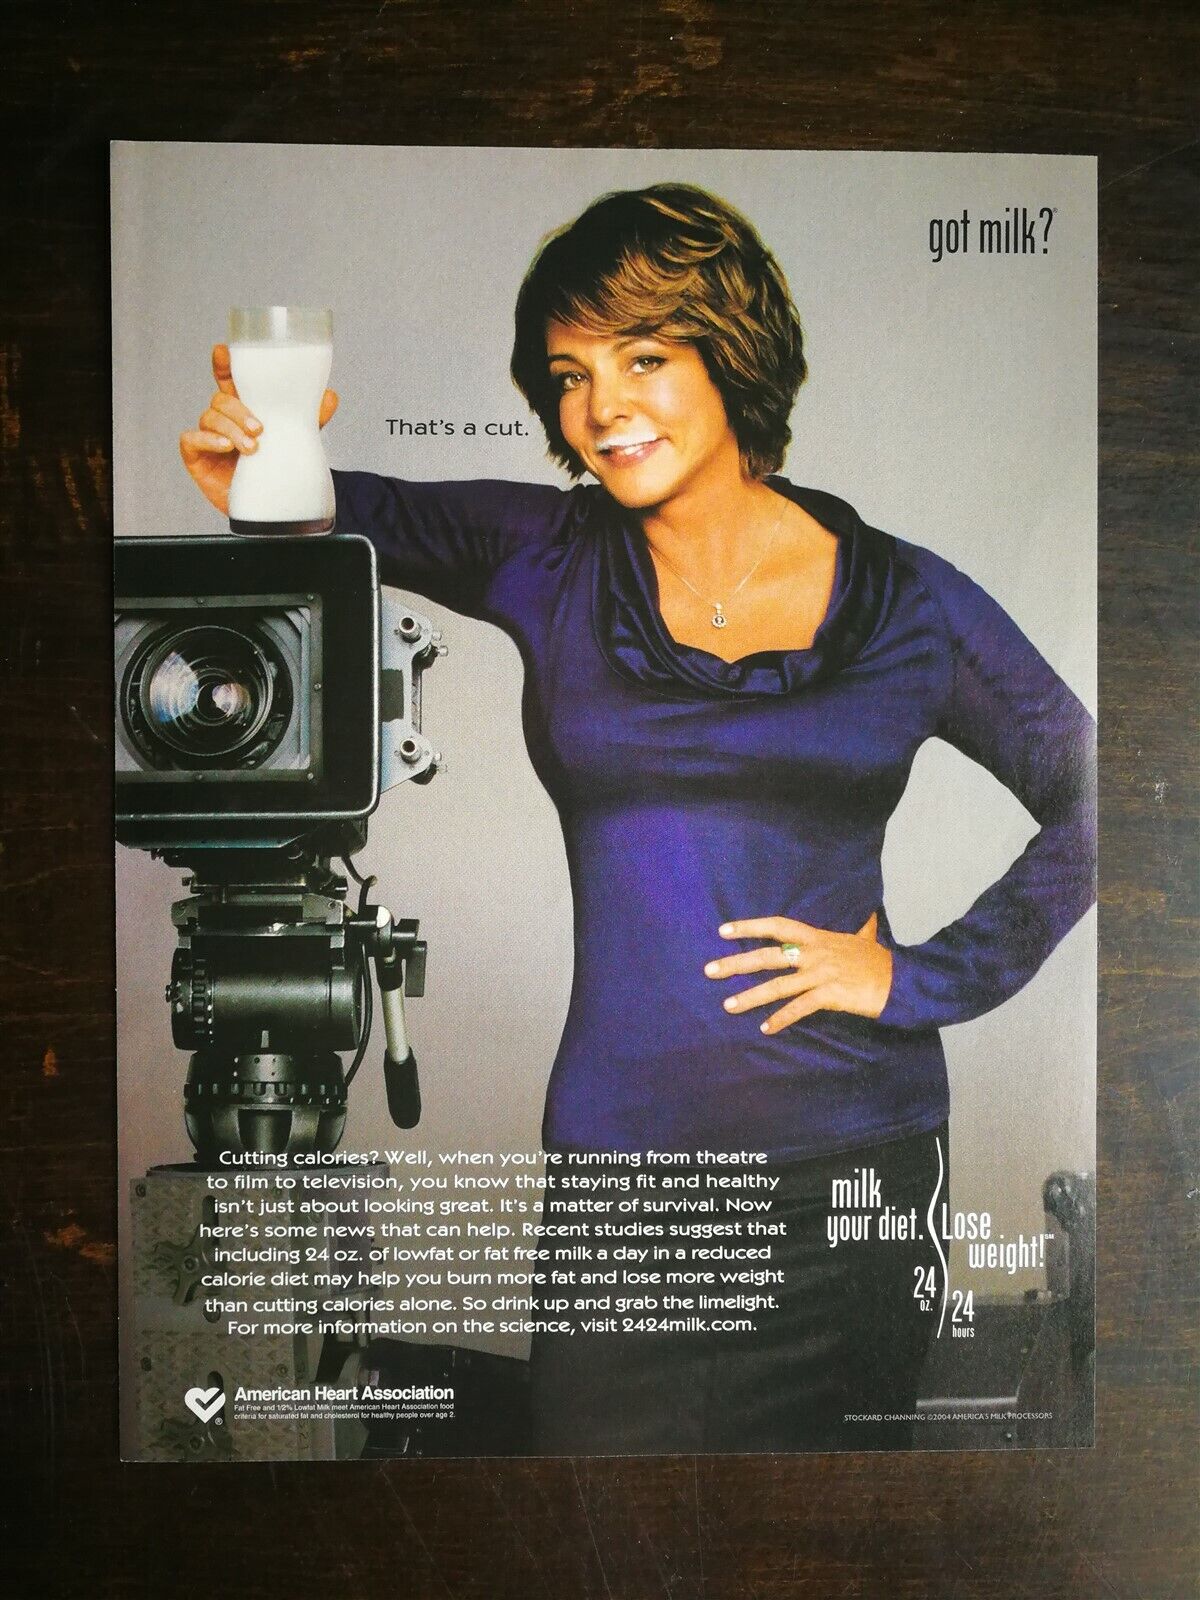 2004 Lindsay Lohan Got Milk? Full Page Original Color Ad